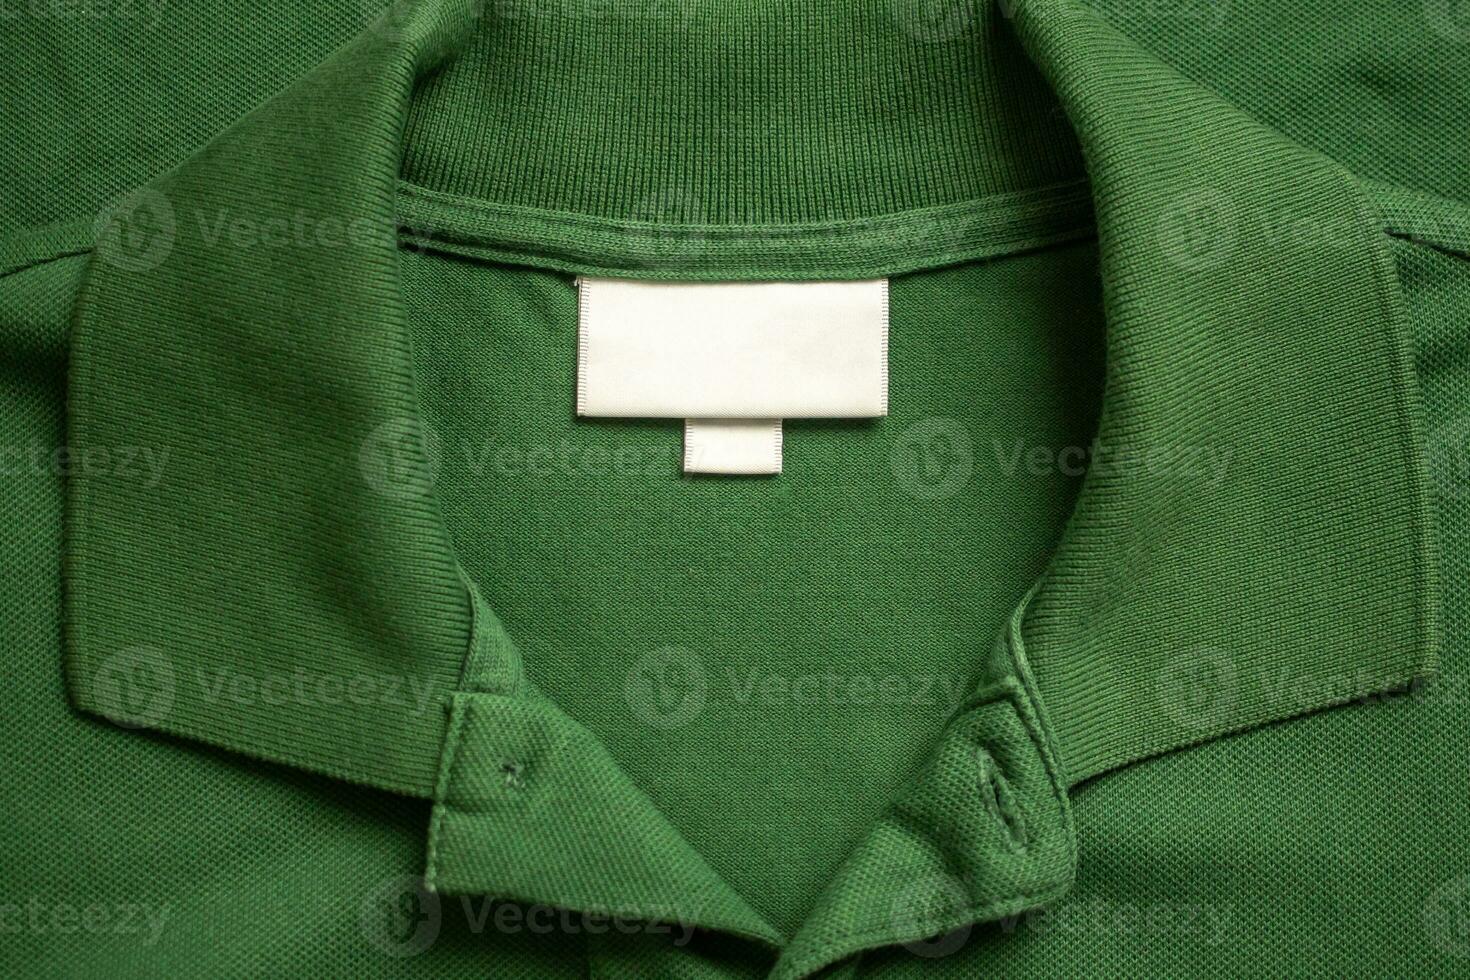 blanco blanco lavandería cuidado ropa etiqueta en verde camisa tela textura antecedentes foto